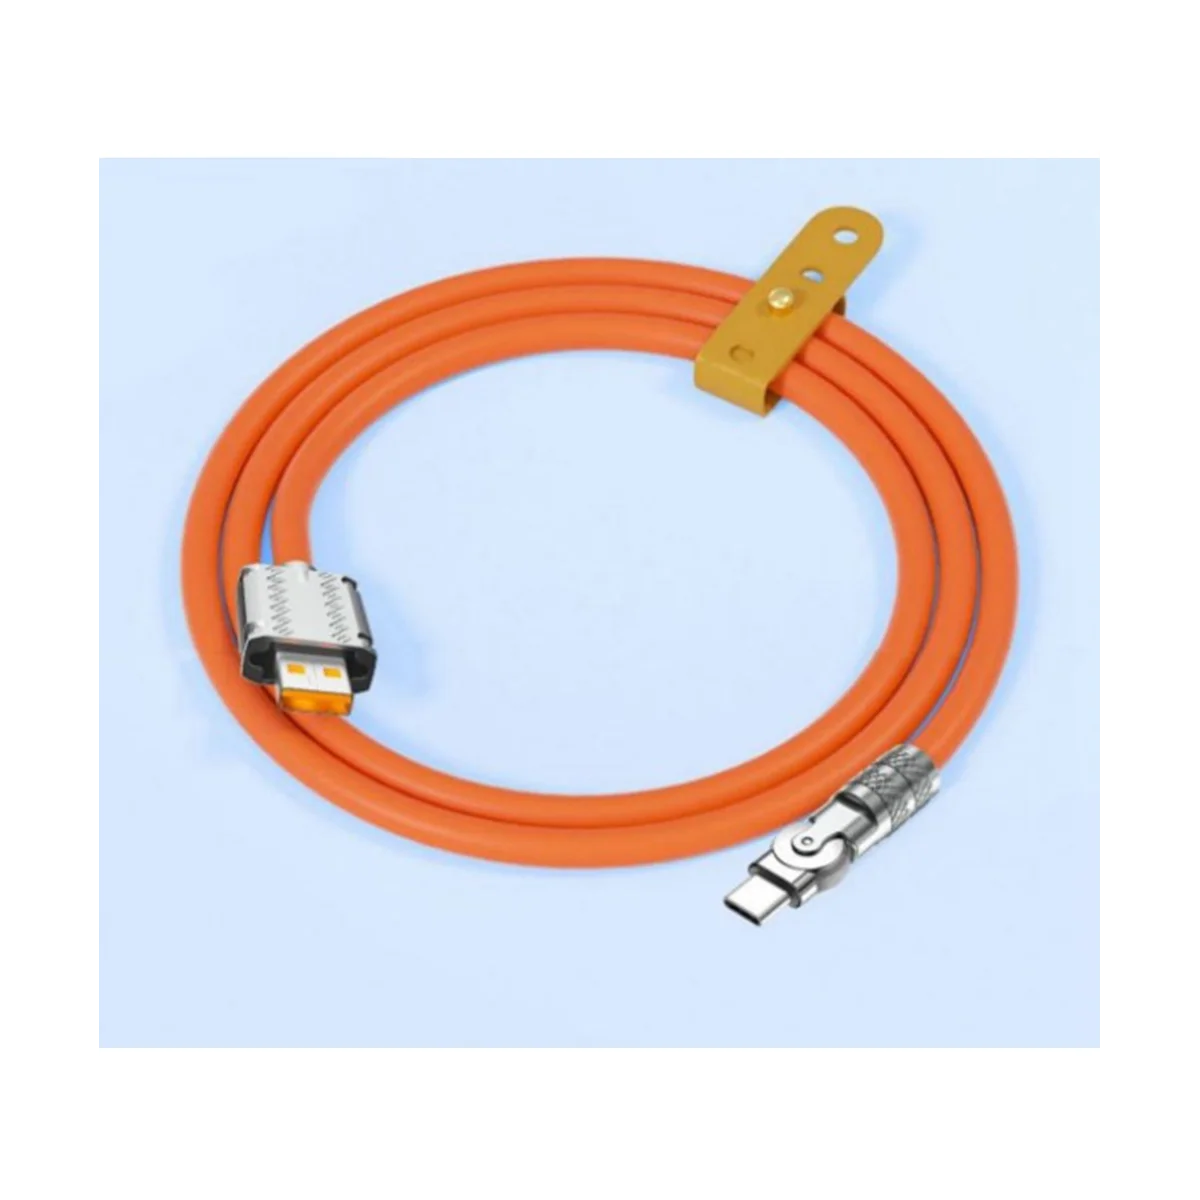 120 Вт 6A Сверхбыстрая зарядка жидким силиконовым кабелем Type-C, быстрый USB-кабель для смартфона, выделенная жирным шрифтом линия передачи данных, синий, 1 м 5